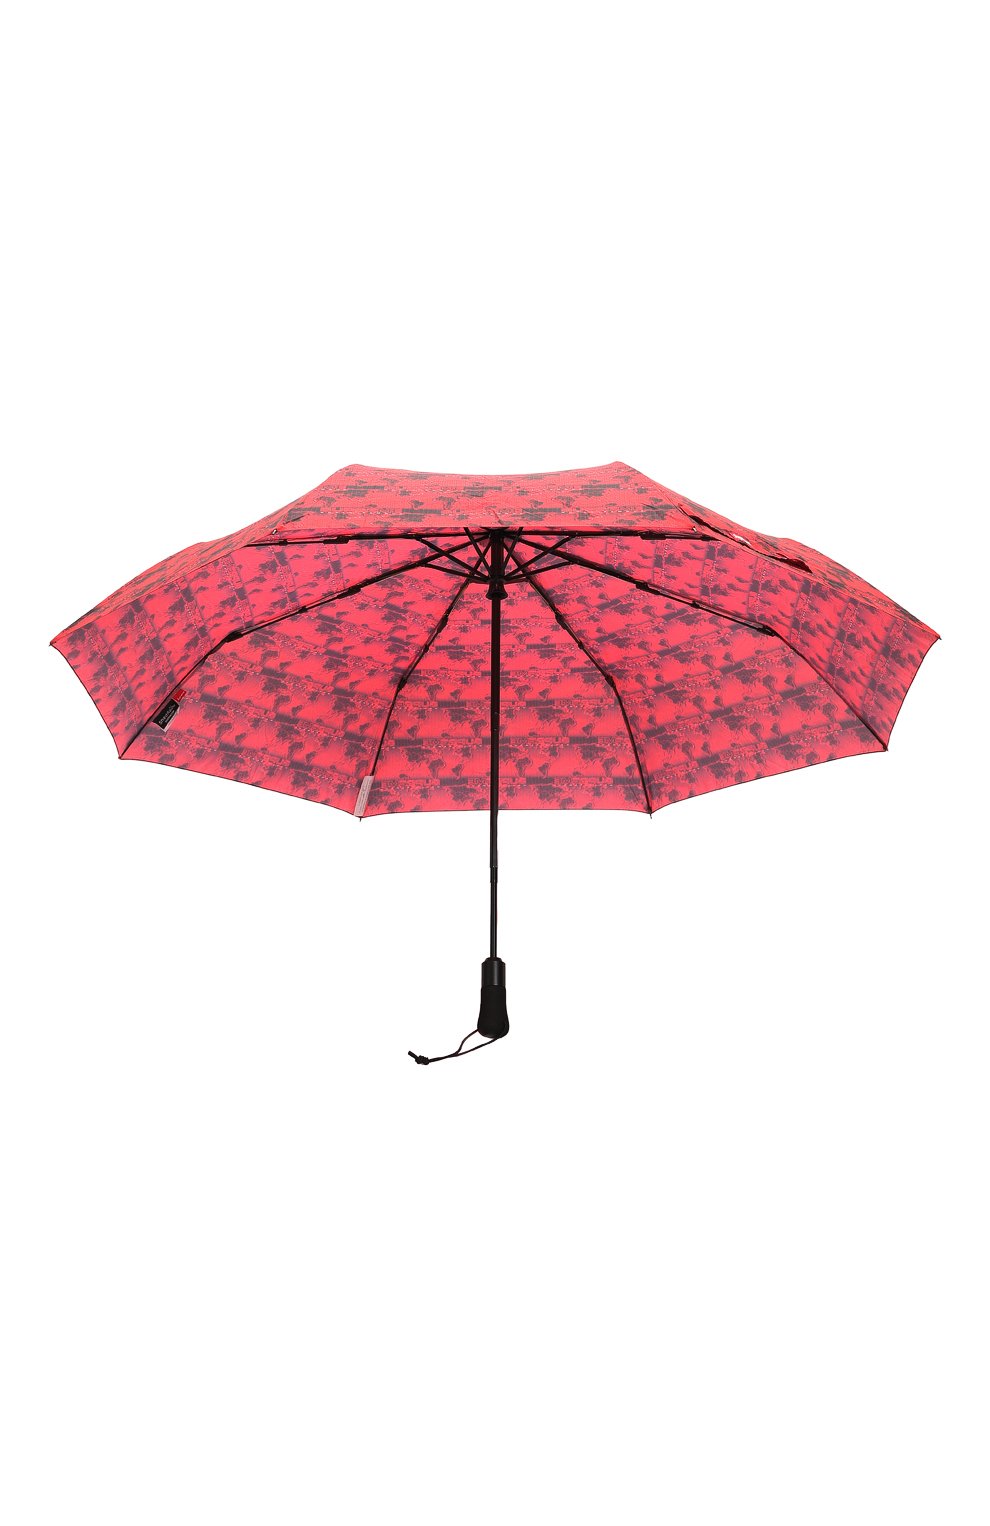 Складной зонт Supreme x ShedRain | Supreme | Красный - 3